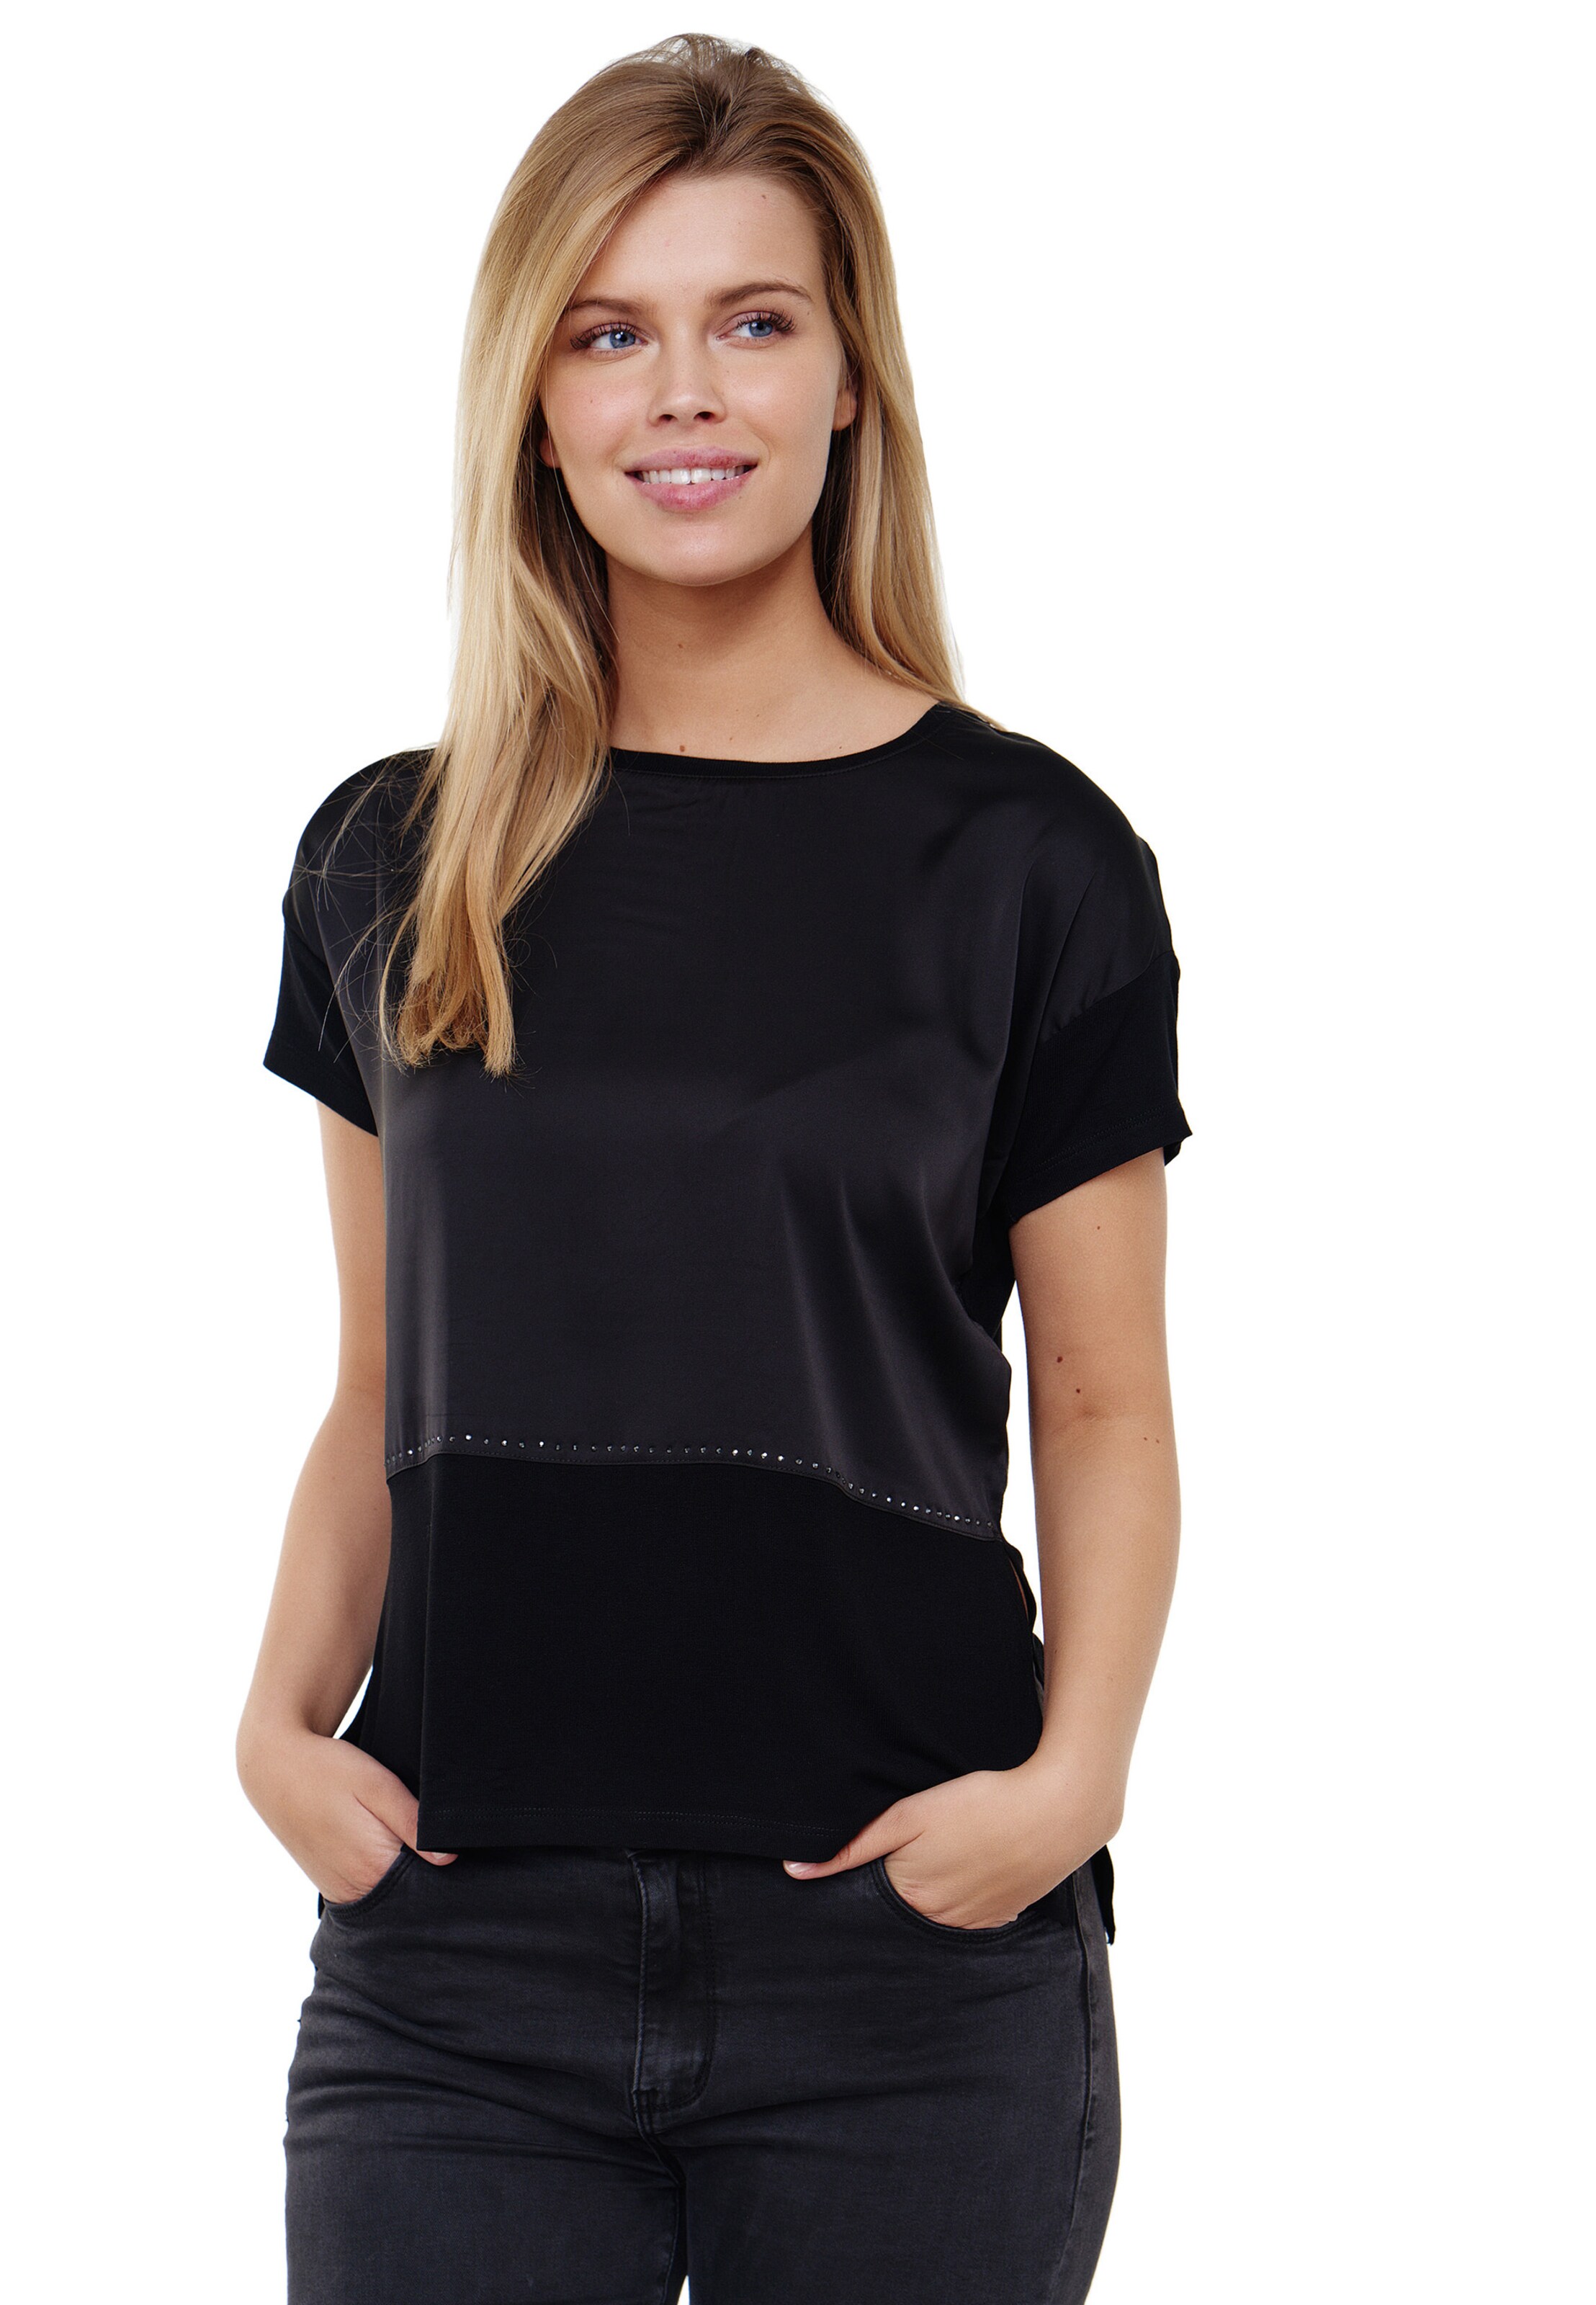 Frauen Shirts & Tops Decay Rundhals-Shirt in Schwarz - QU94480